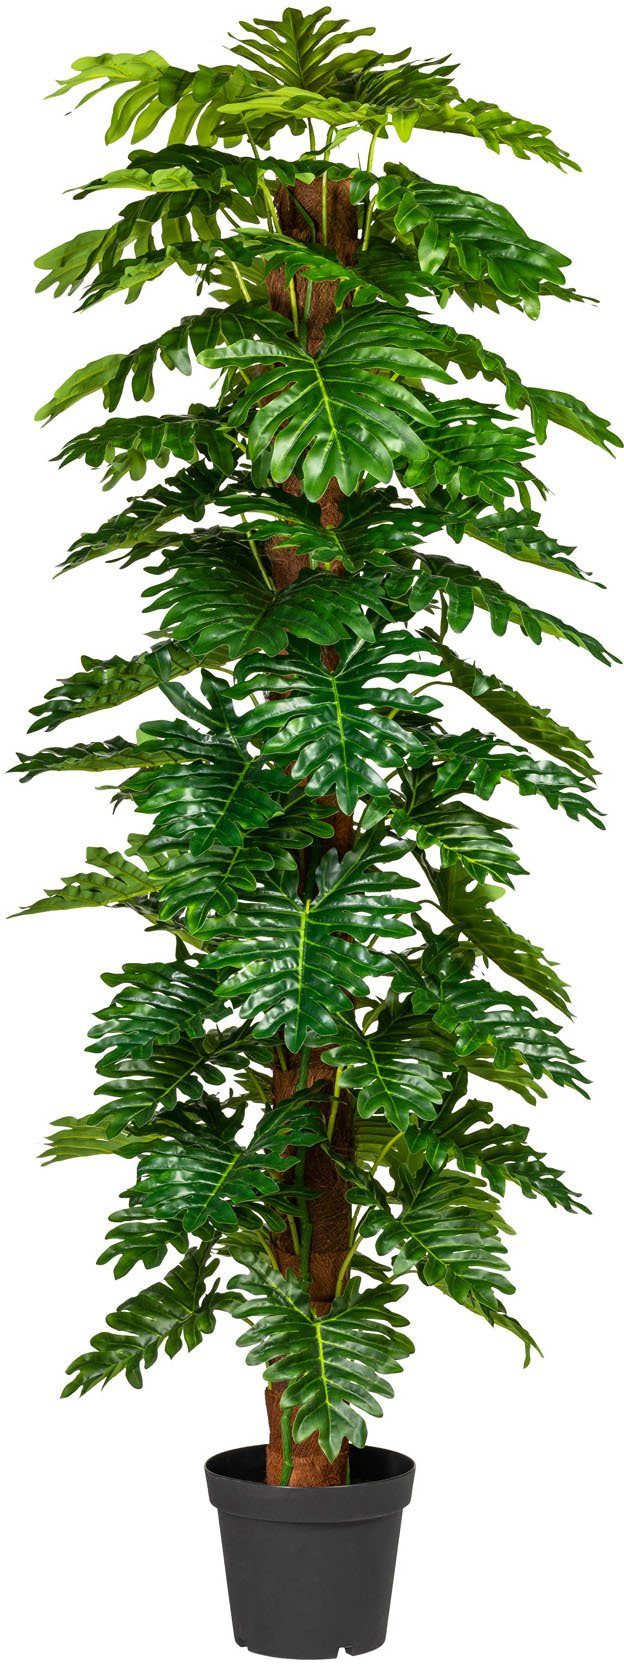 190 green, cm Zimmerpflanze Künstliche Creativ Monsterapflanze Höhe Grünpflanze,